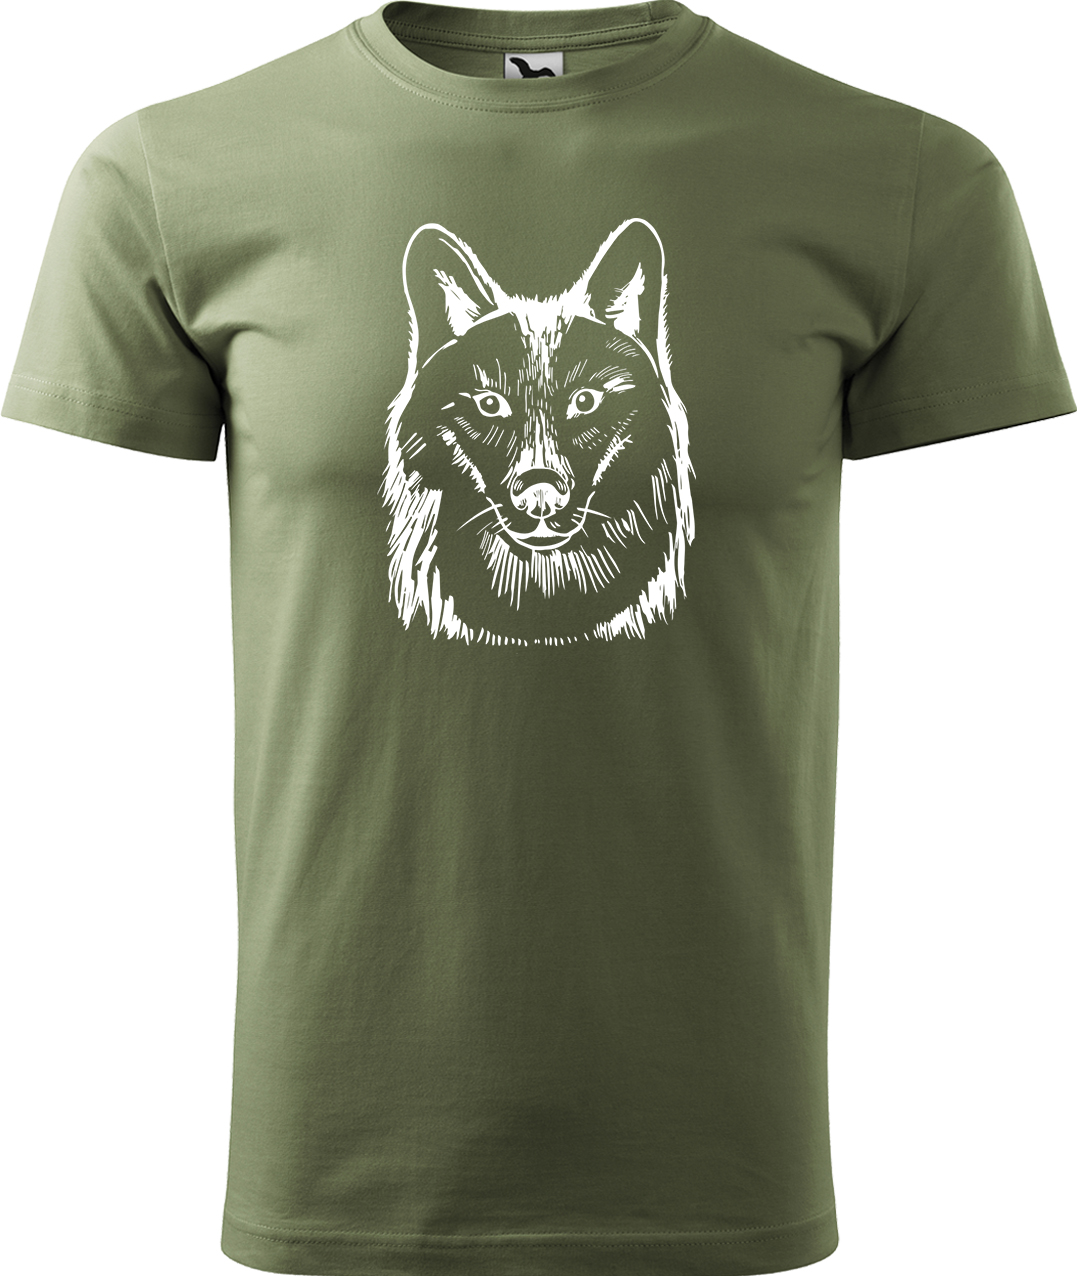 Pánské tričko s vlkem - Kresba vlka Velikost: S, Barva: Světlá khaki (28), Střih: pánský